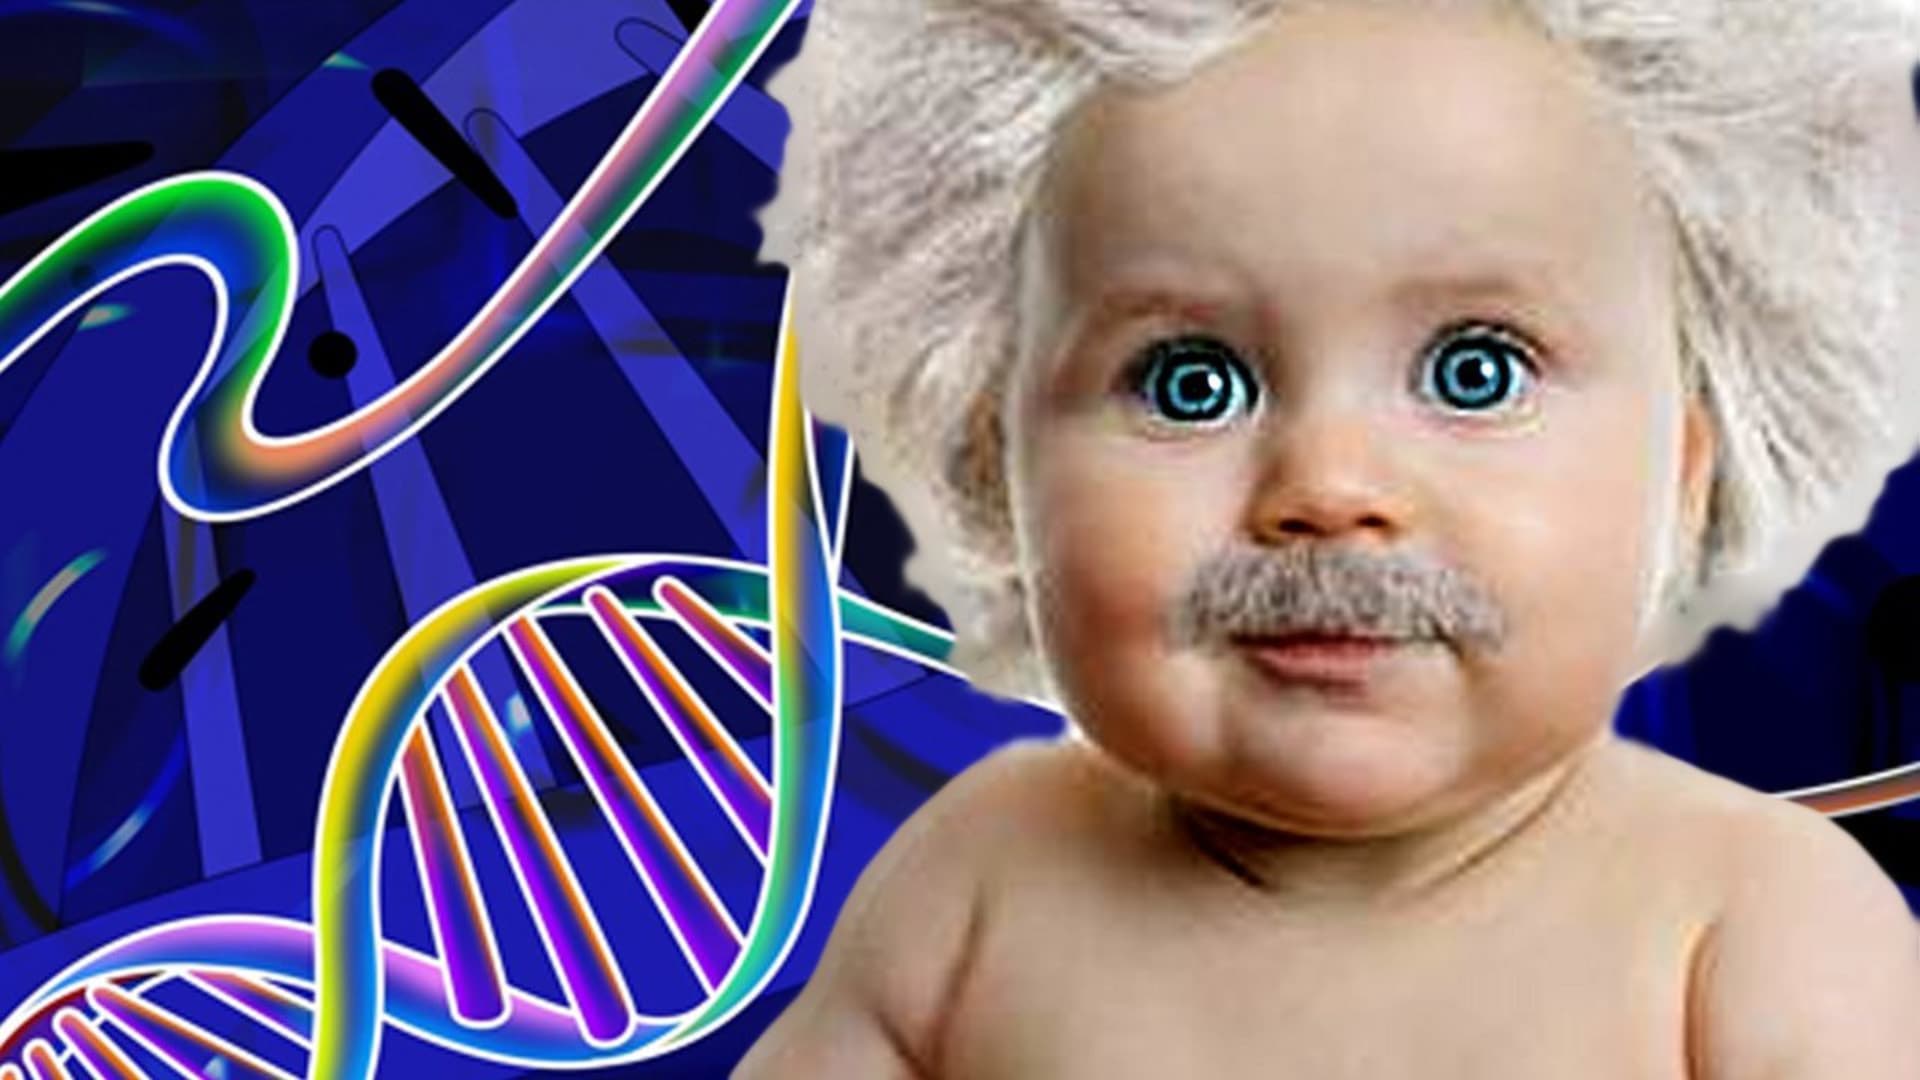 Kolik byste zaplatili za geneticky vylepšené dítě?